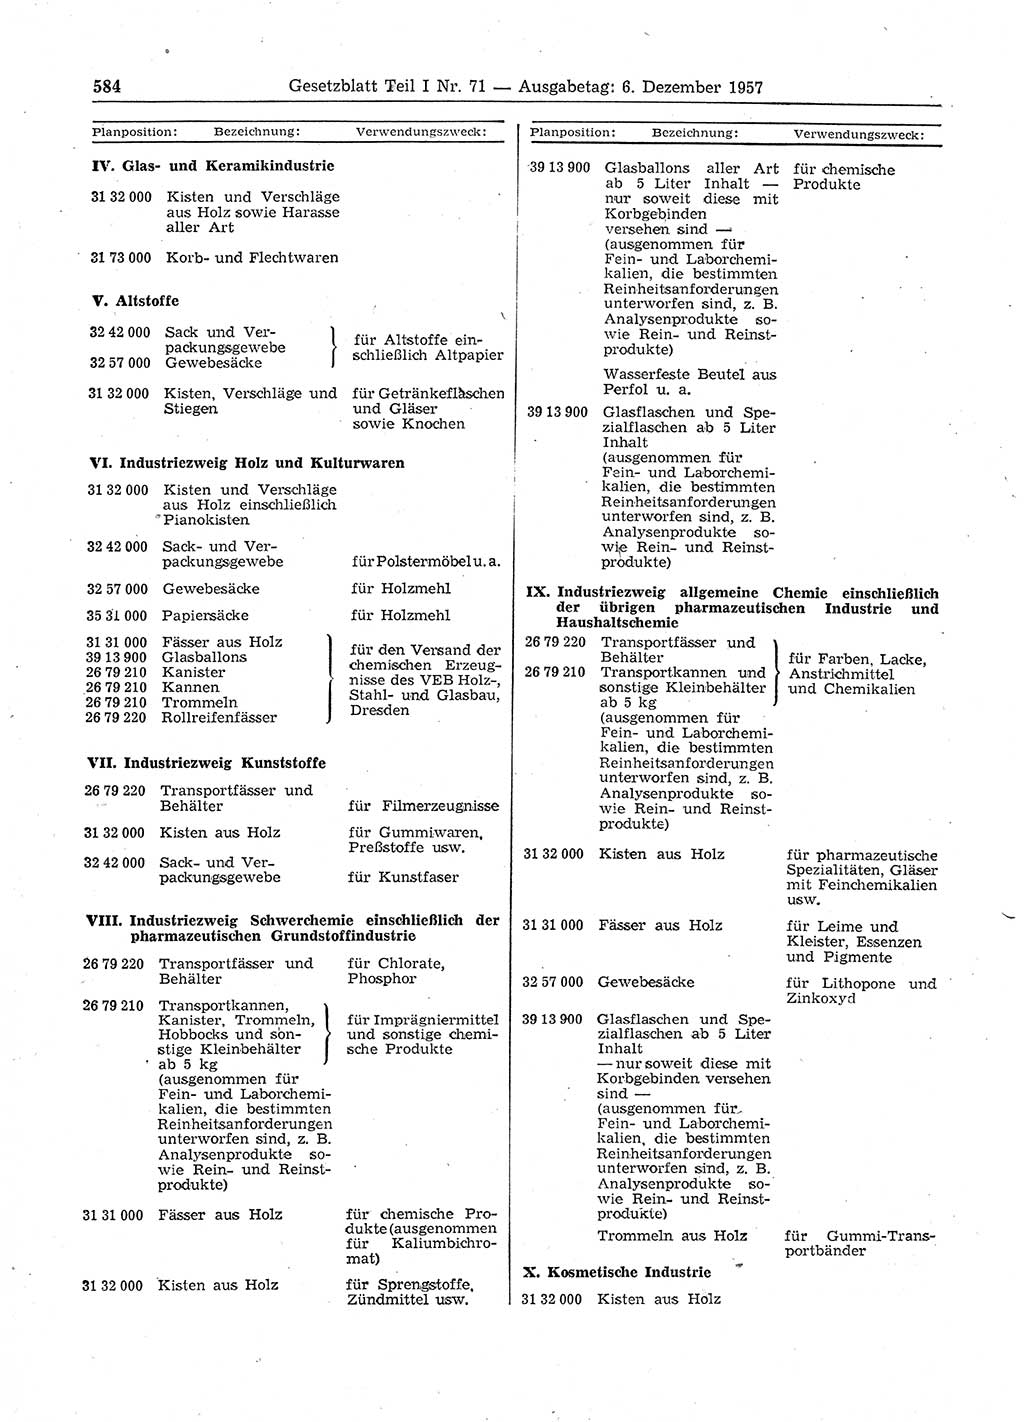 Gesetzblatt (GBl.) der Deutschen Demokratischen Republik (DDR) Teil Ⅰ 1957, Seite 584 (GBl. DDR Ⅰ 1957, S. 584)